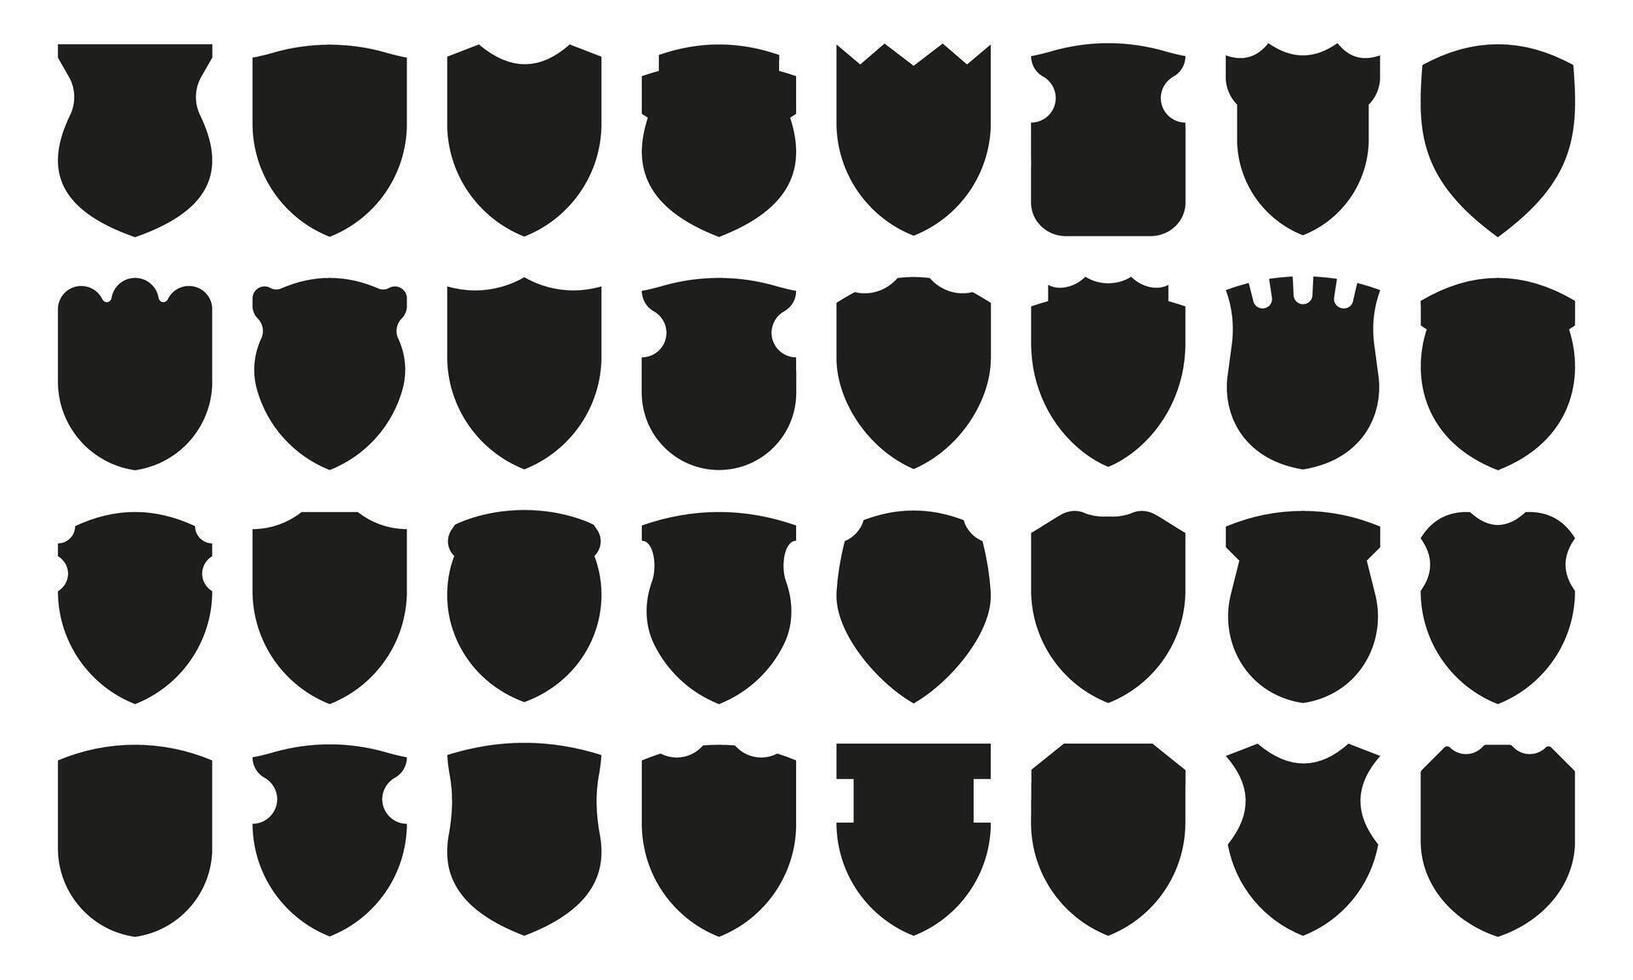 escudo silhueta ícones. medieval Preto silhuetas do diferente formas, segurança e autoridade heráldico símbolo, em branco proteção rótulo. vetor isolado conjunto